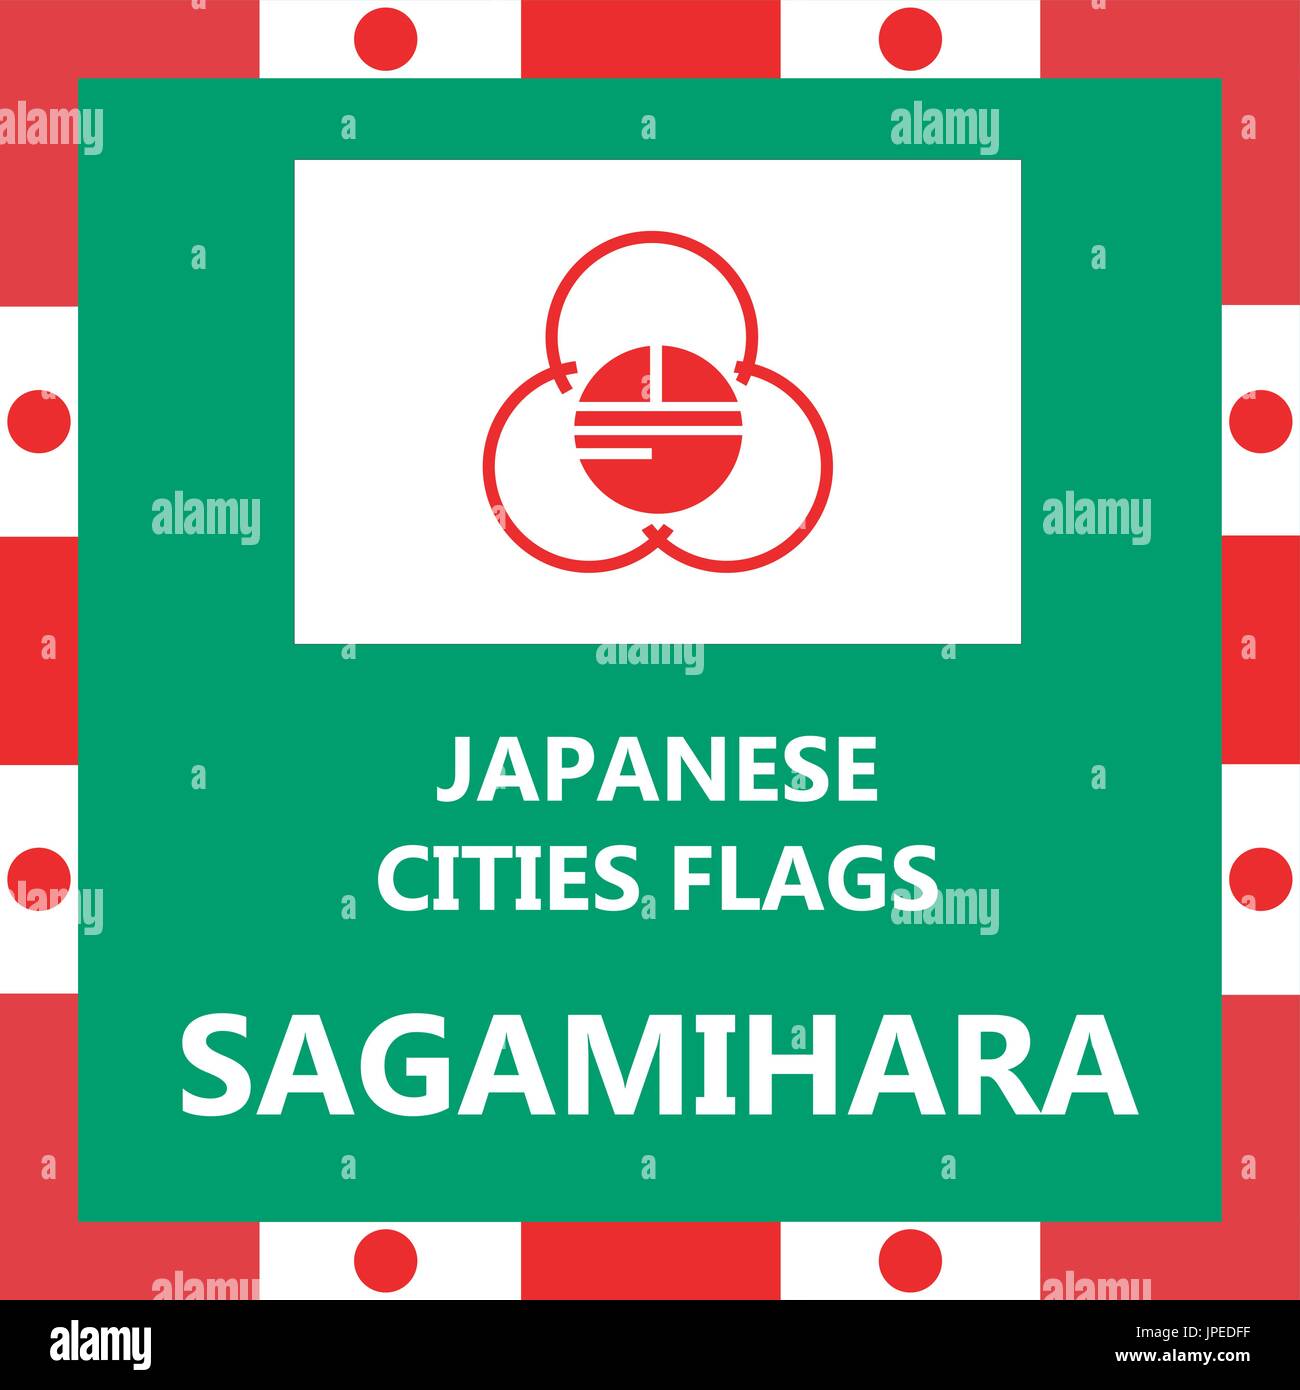 Pavillon de ville japonaise Sagamihara Illustration de Vecteur